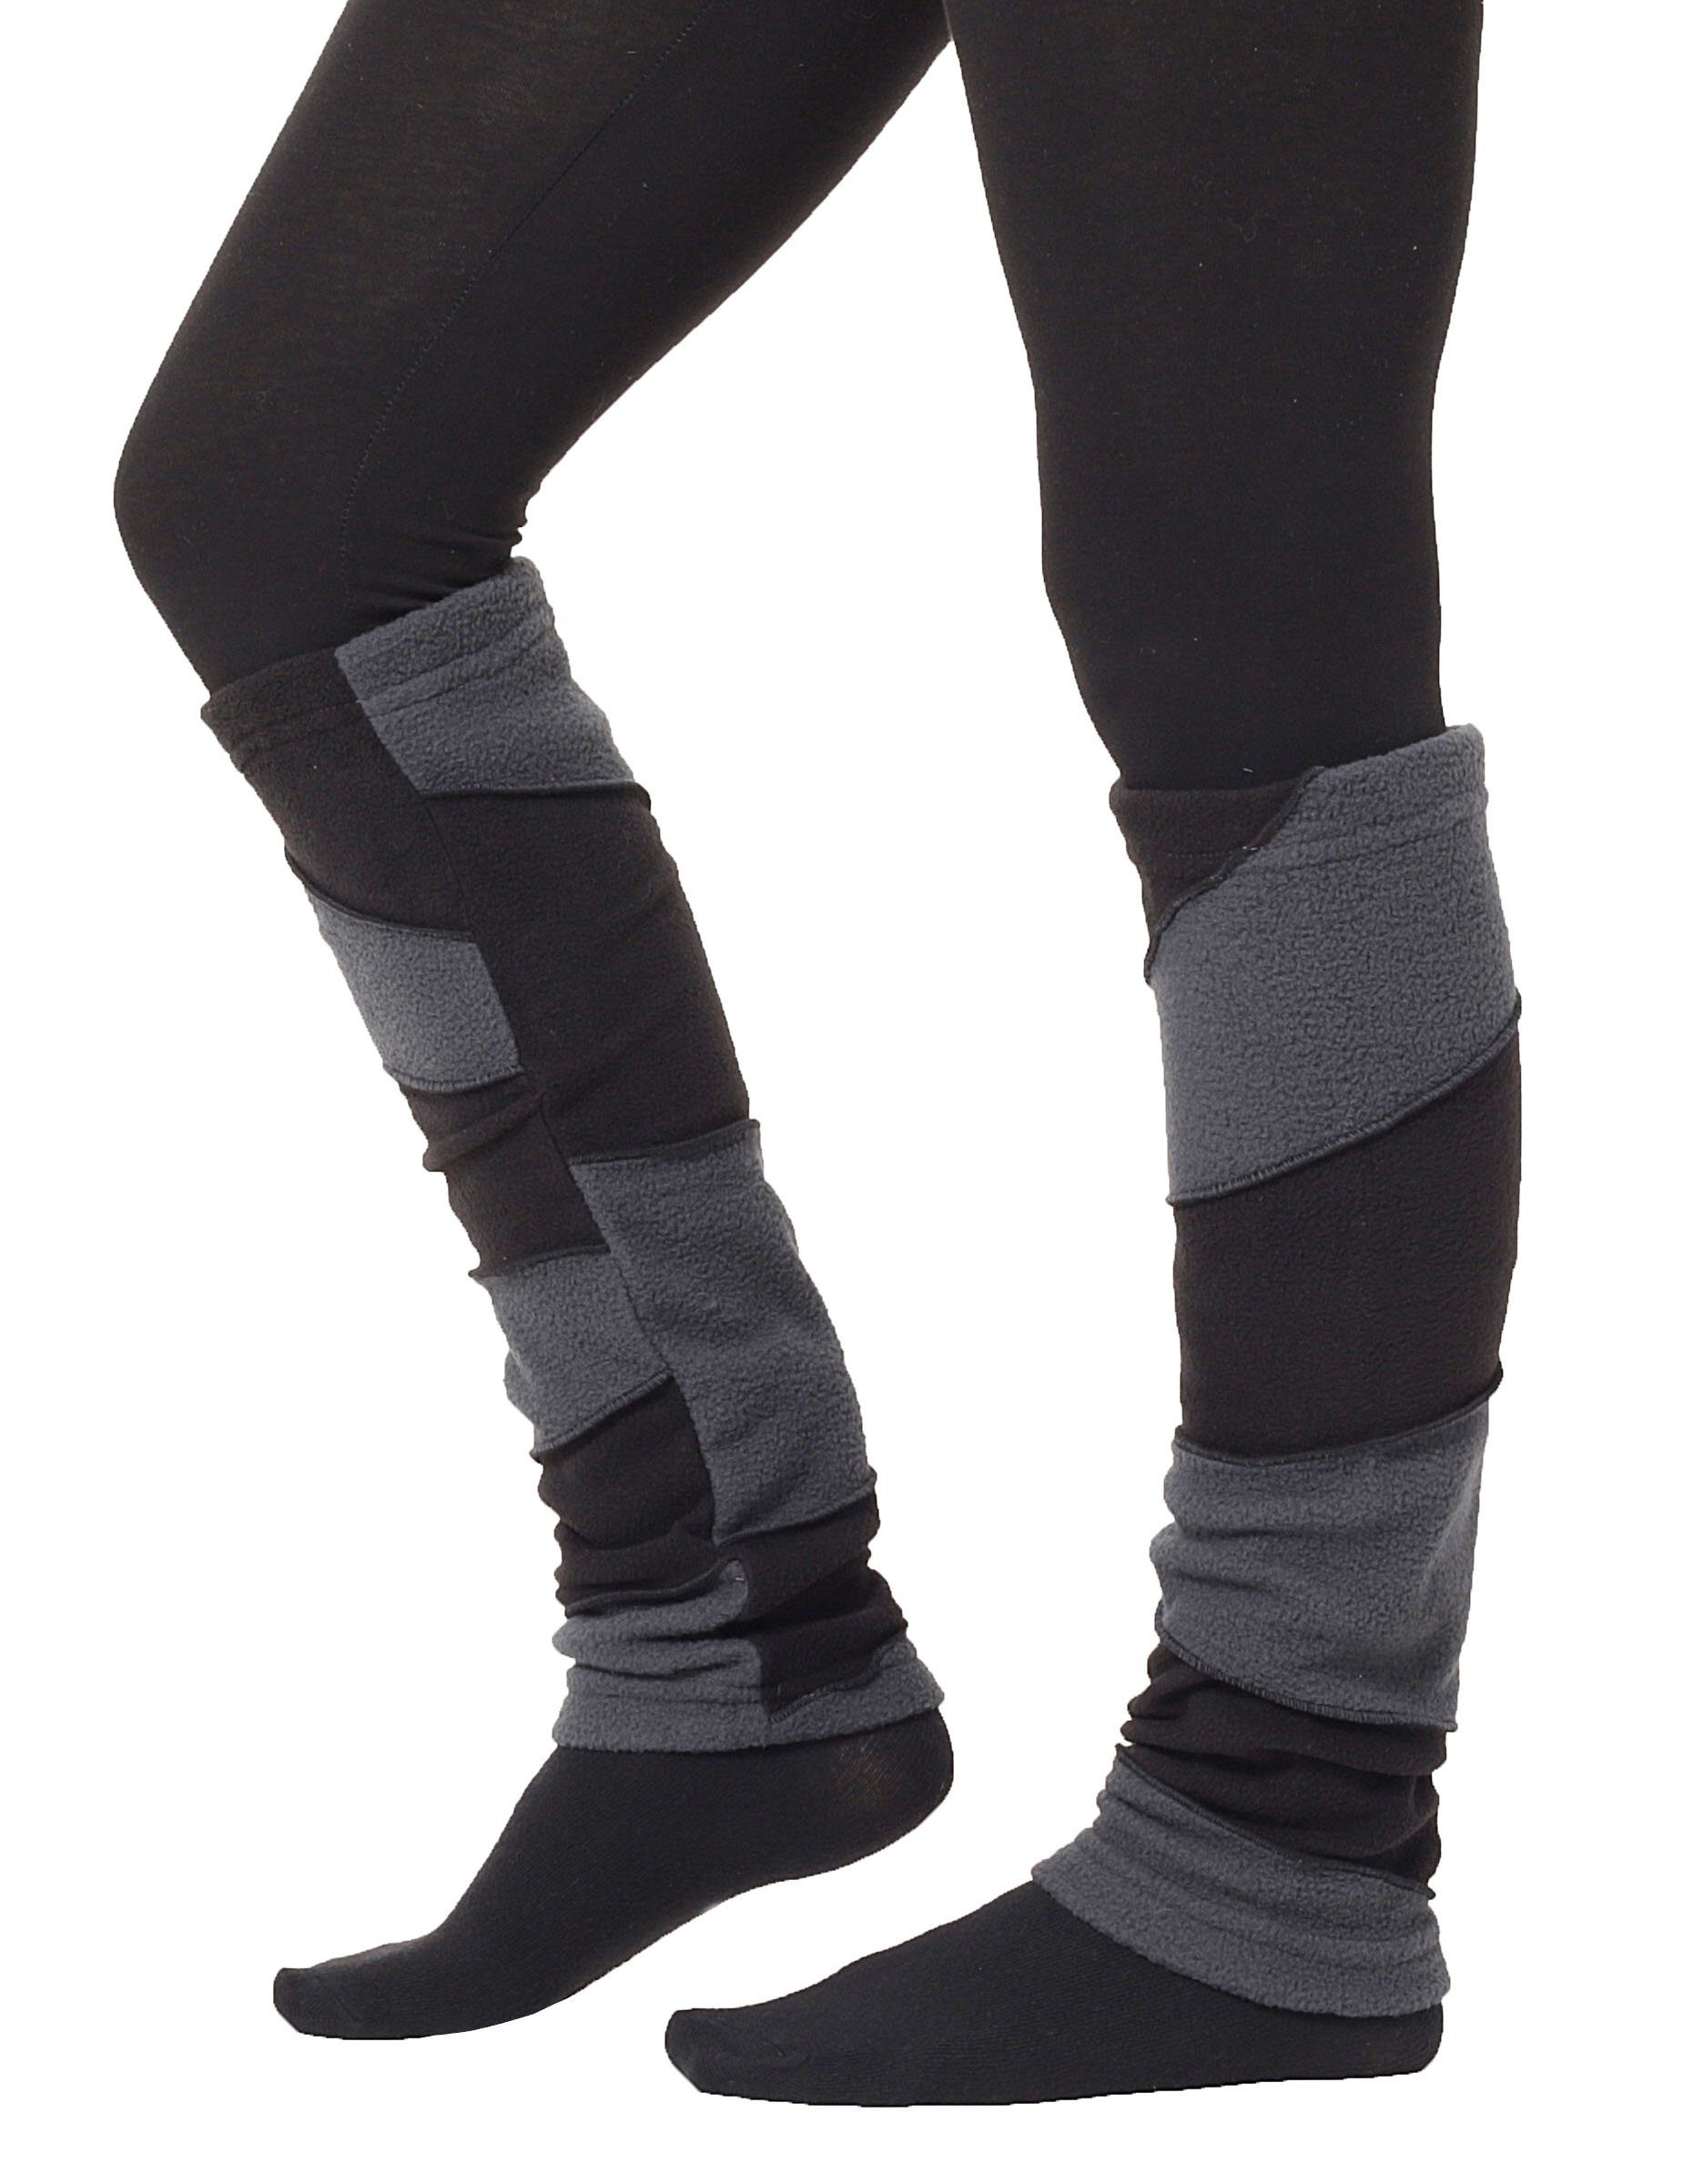 PUREWONDER Beinstulpen zweifarbig lw27 Einheitsgröße (1 Paar) Schwarz Stulpen Fleece aus